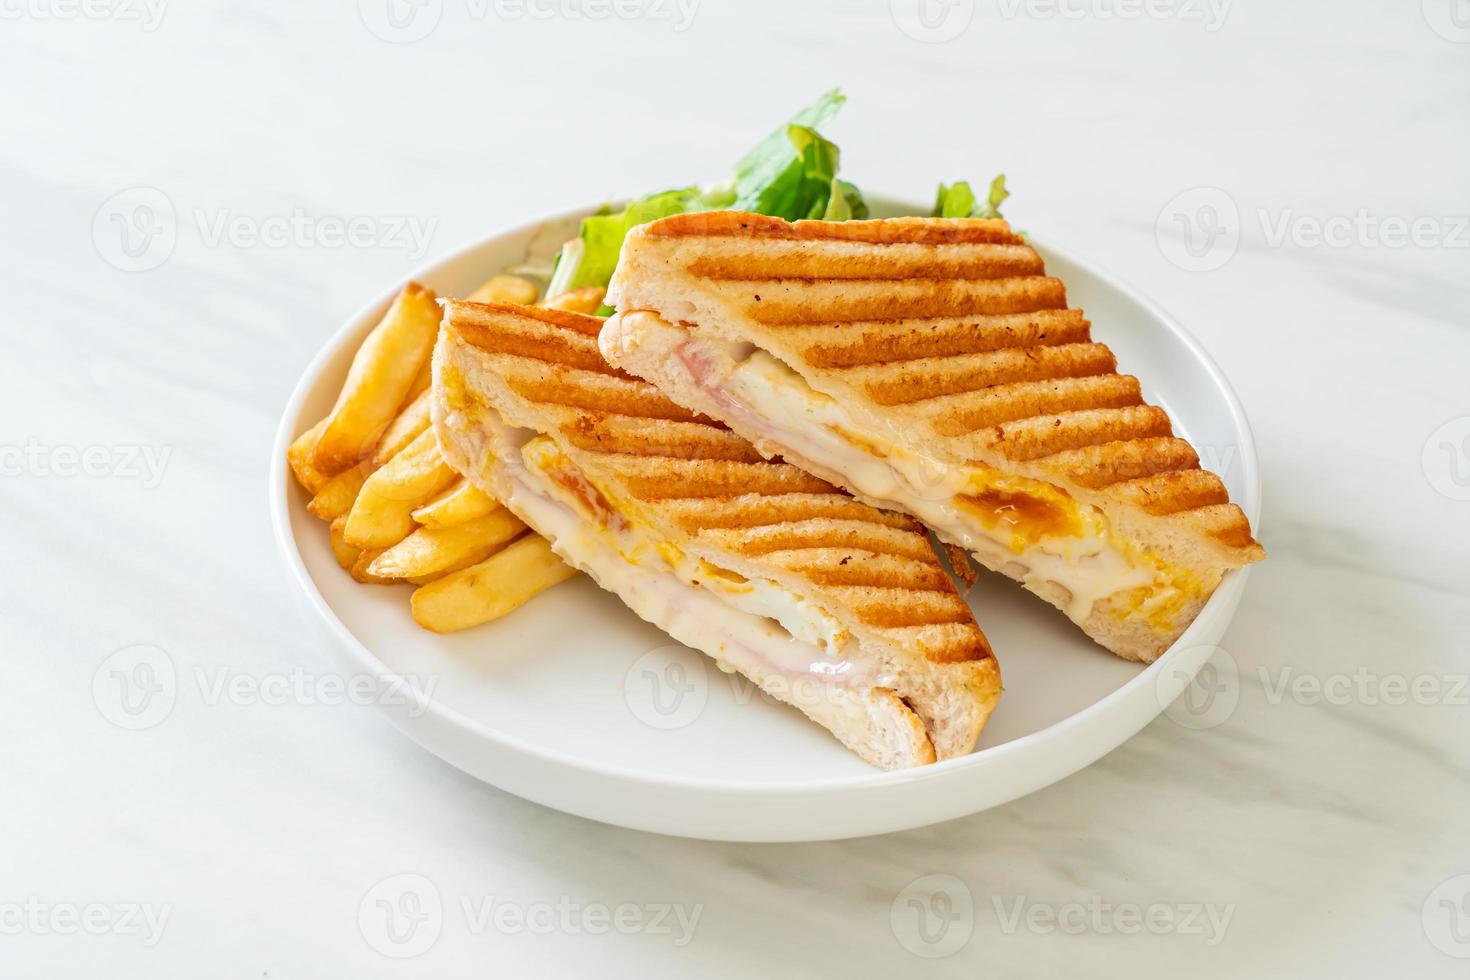 Schinken-Käse-Sandwich mit Ei und Pommes foto